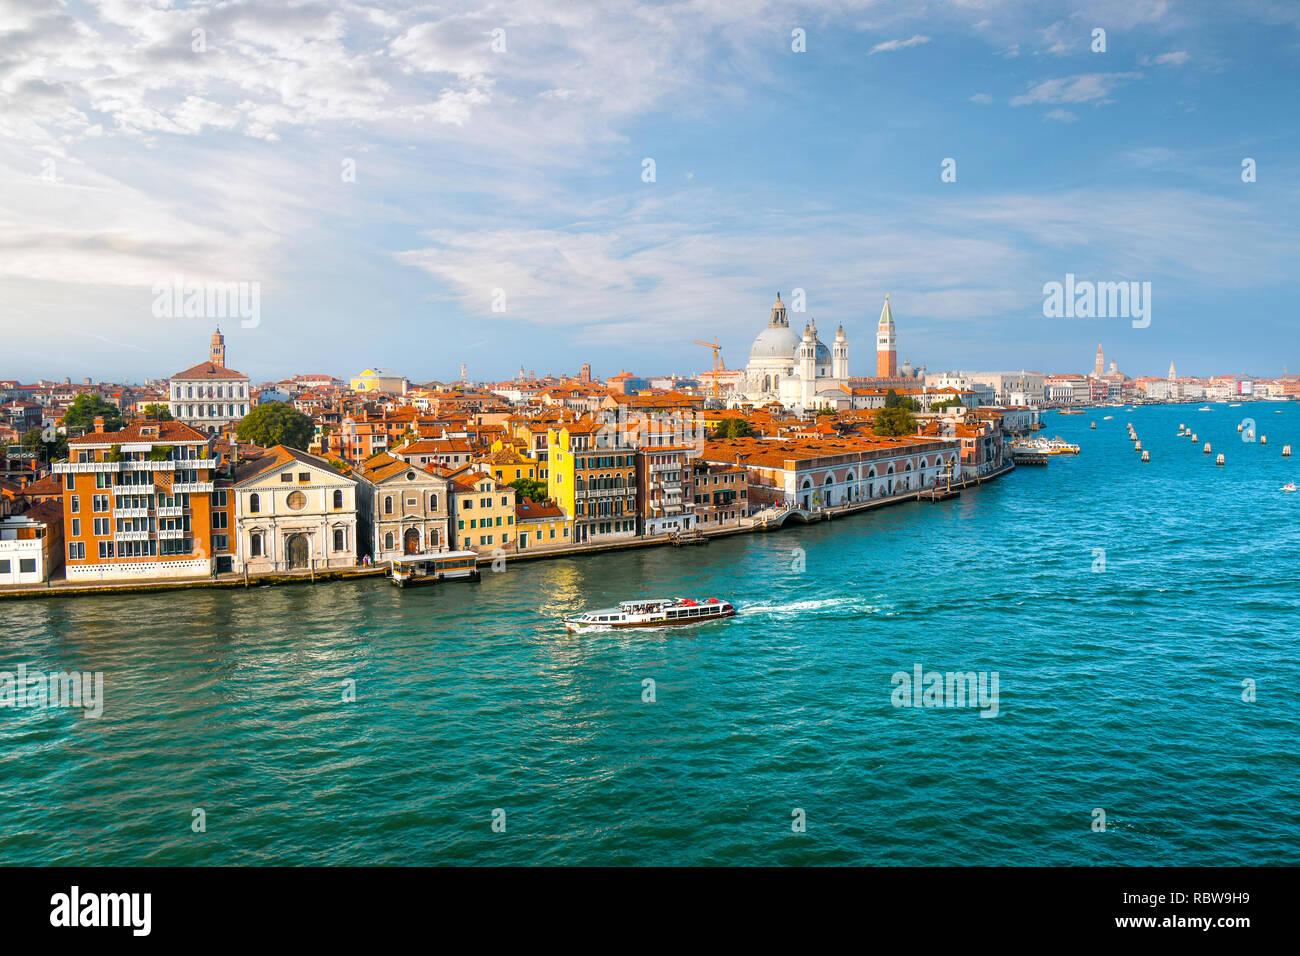 Un taxi de l'eau Venise, Italie croisières le grand canal avec le dôme de la cathédrale Santa Maria della Salute, le Campanile et la place Saint Marc en vue Banque D'Images